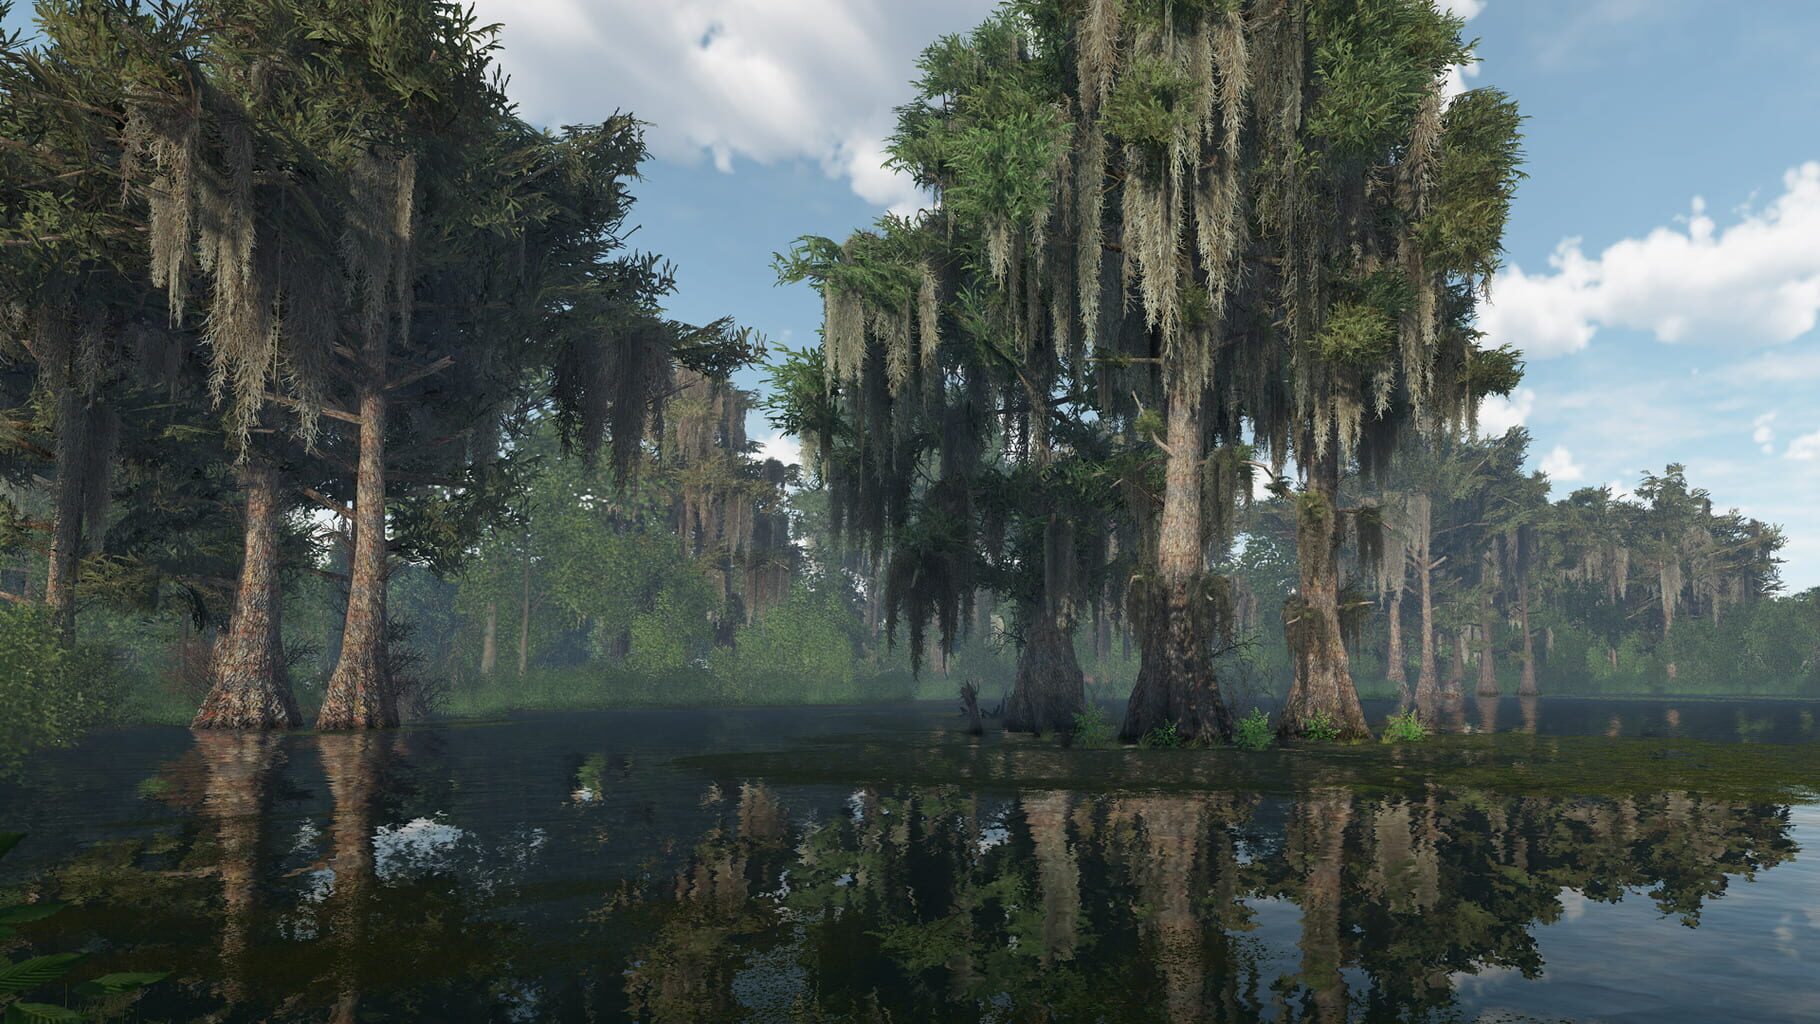 Fishing Planet screenshots